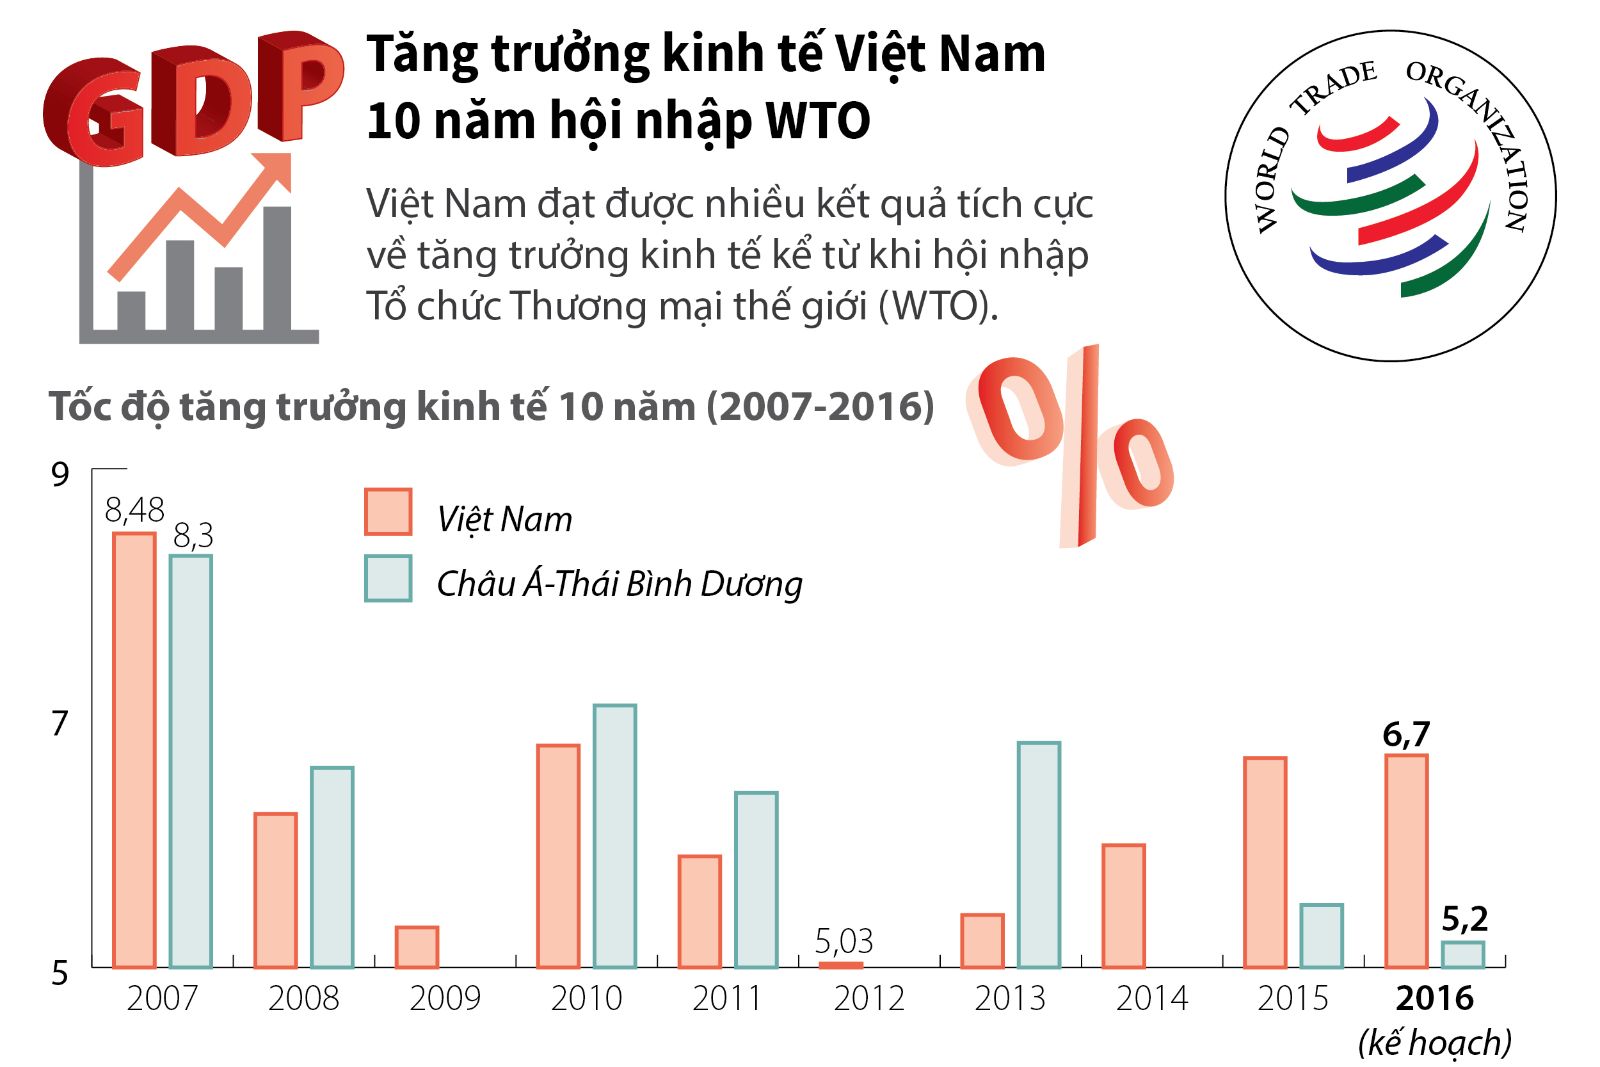 Với việc gia nhập Tổ chức Thương mại Thế giới (WTO), Việt Nam đã chứng tỏ được sự phát triển và tiềm năng của mình trên trường quốc tế. Hãy cùng xem hình ảnh liên quan đến những lợi ích mà WTO mang lại cho đất nước Việt Nam.